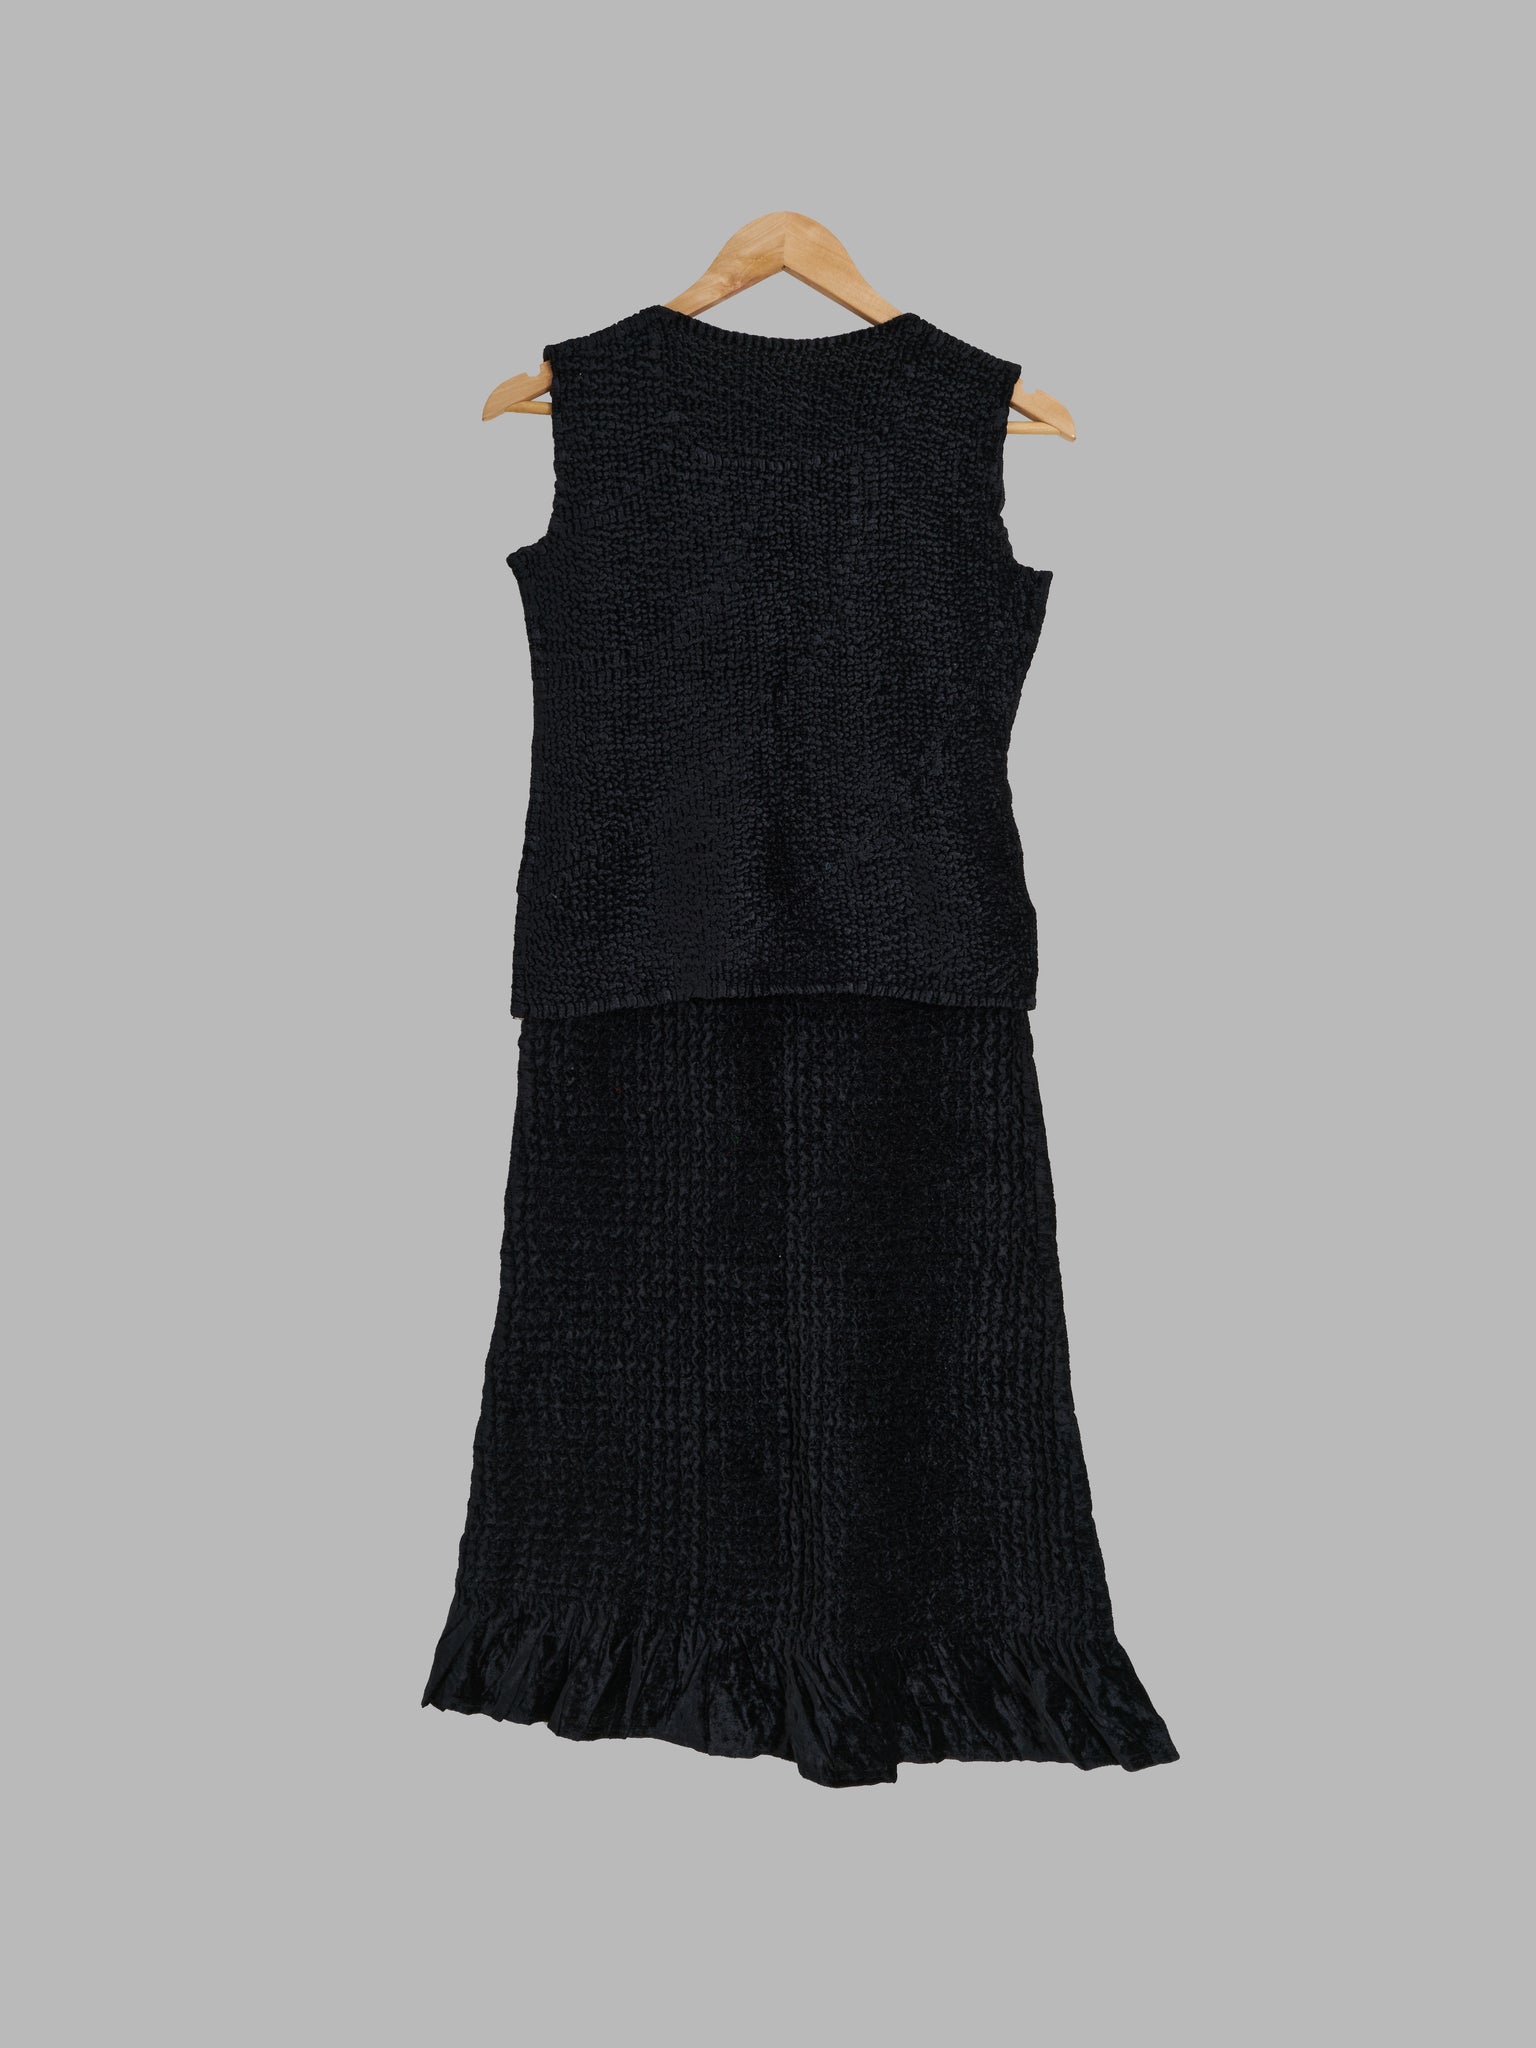 Yoshiki Hishinuma Peplum black velour sleeveless top and ruffled skirt set - S